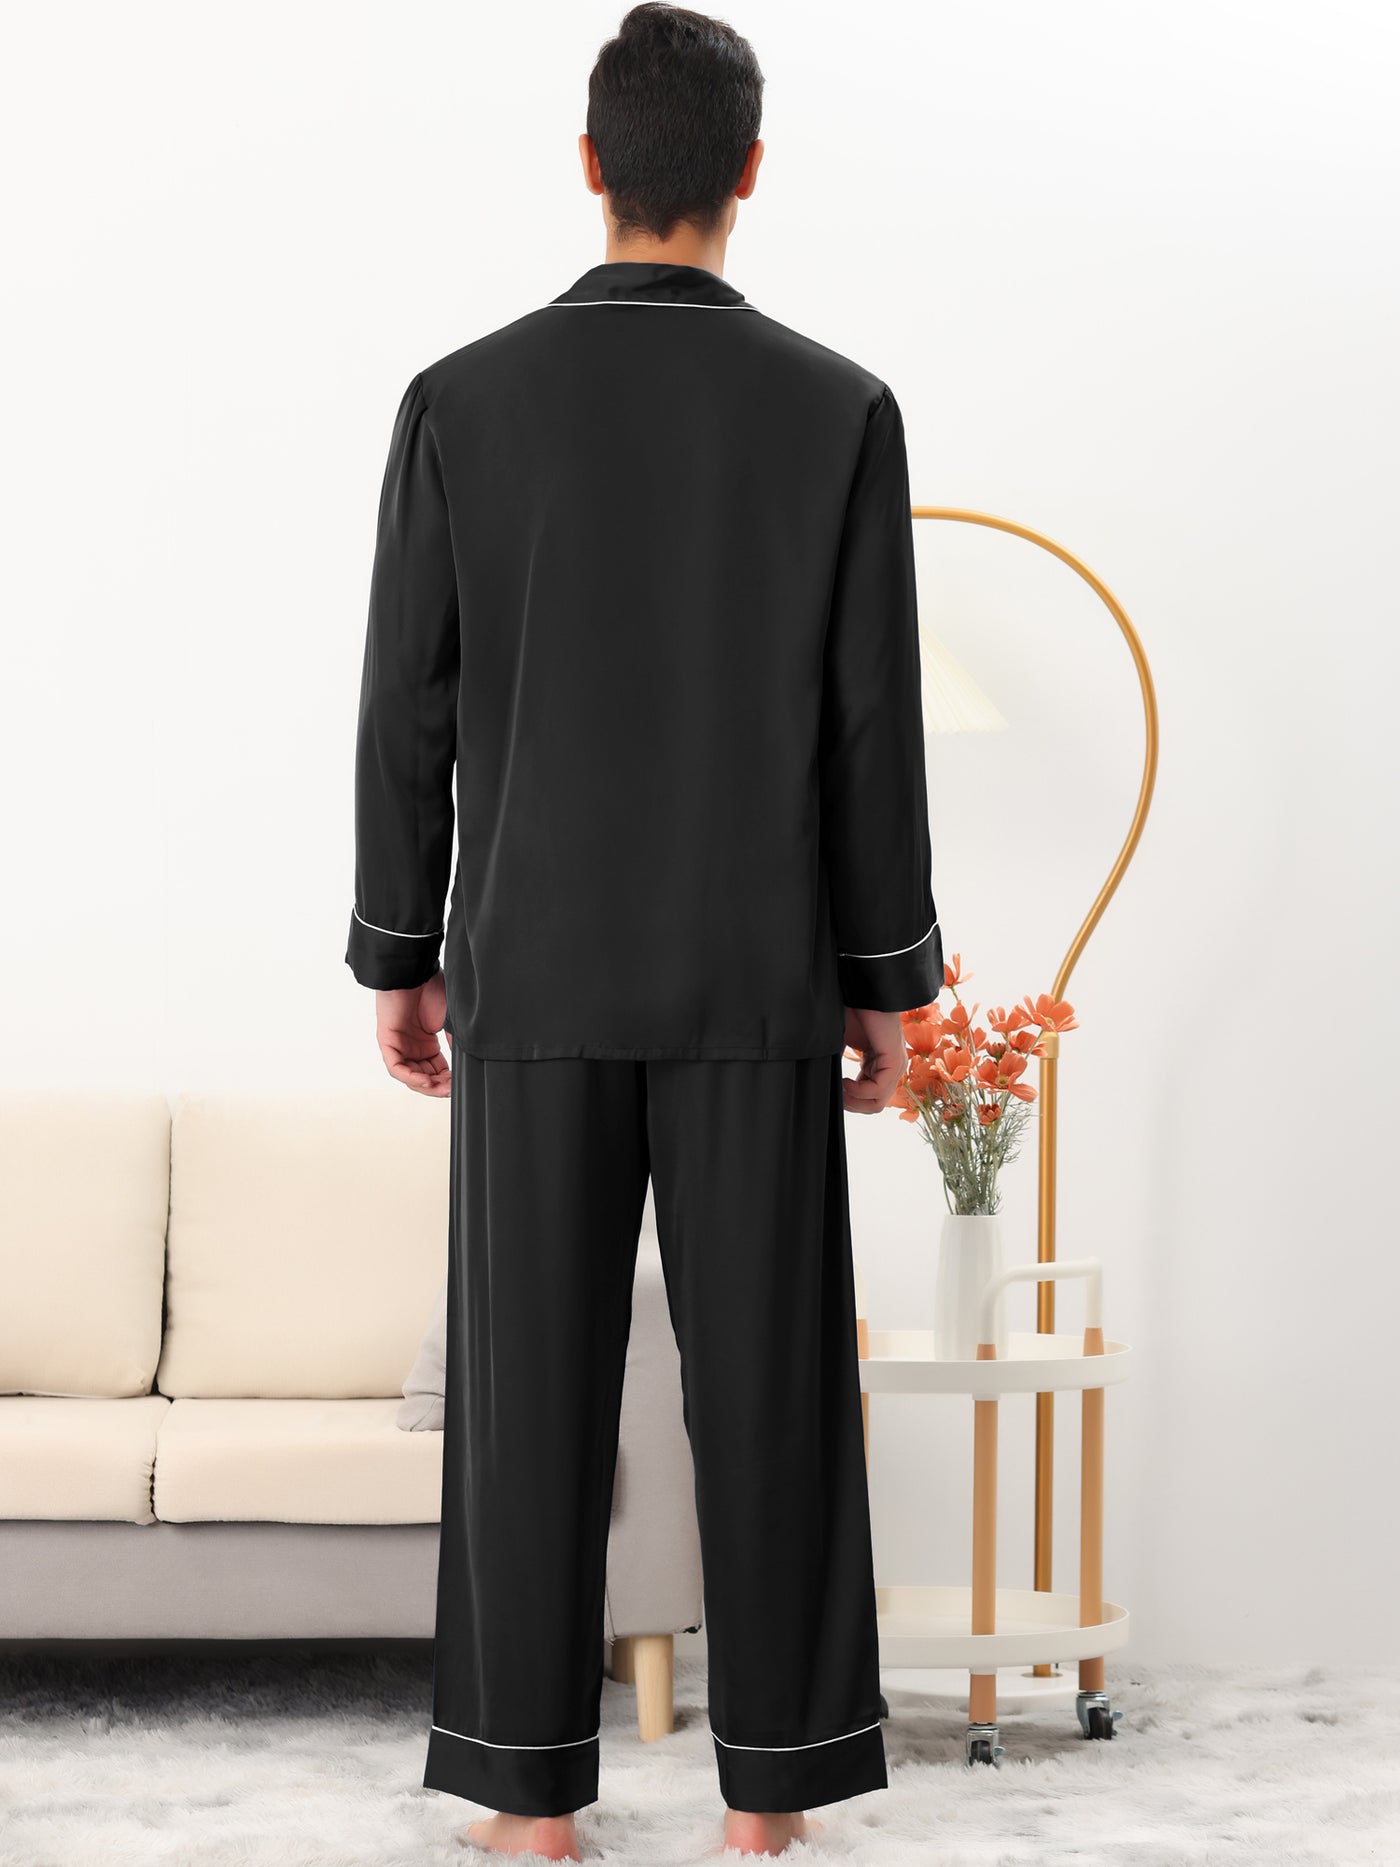 Bublédon Men's Sleepwear Pjs Long Sleeves Shirt and Pants Nightwear Satin Pajama Set